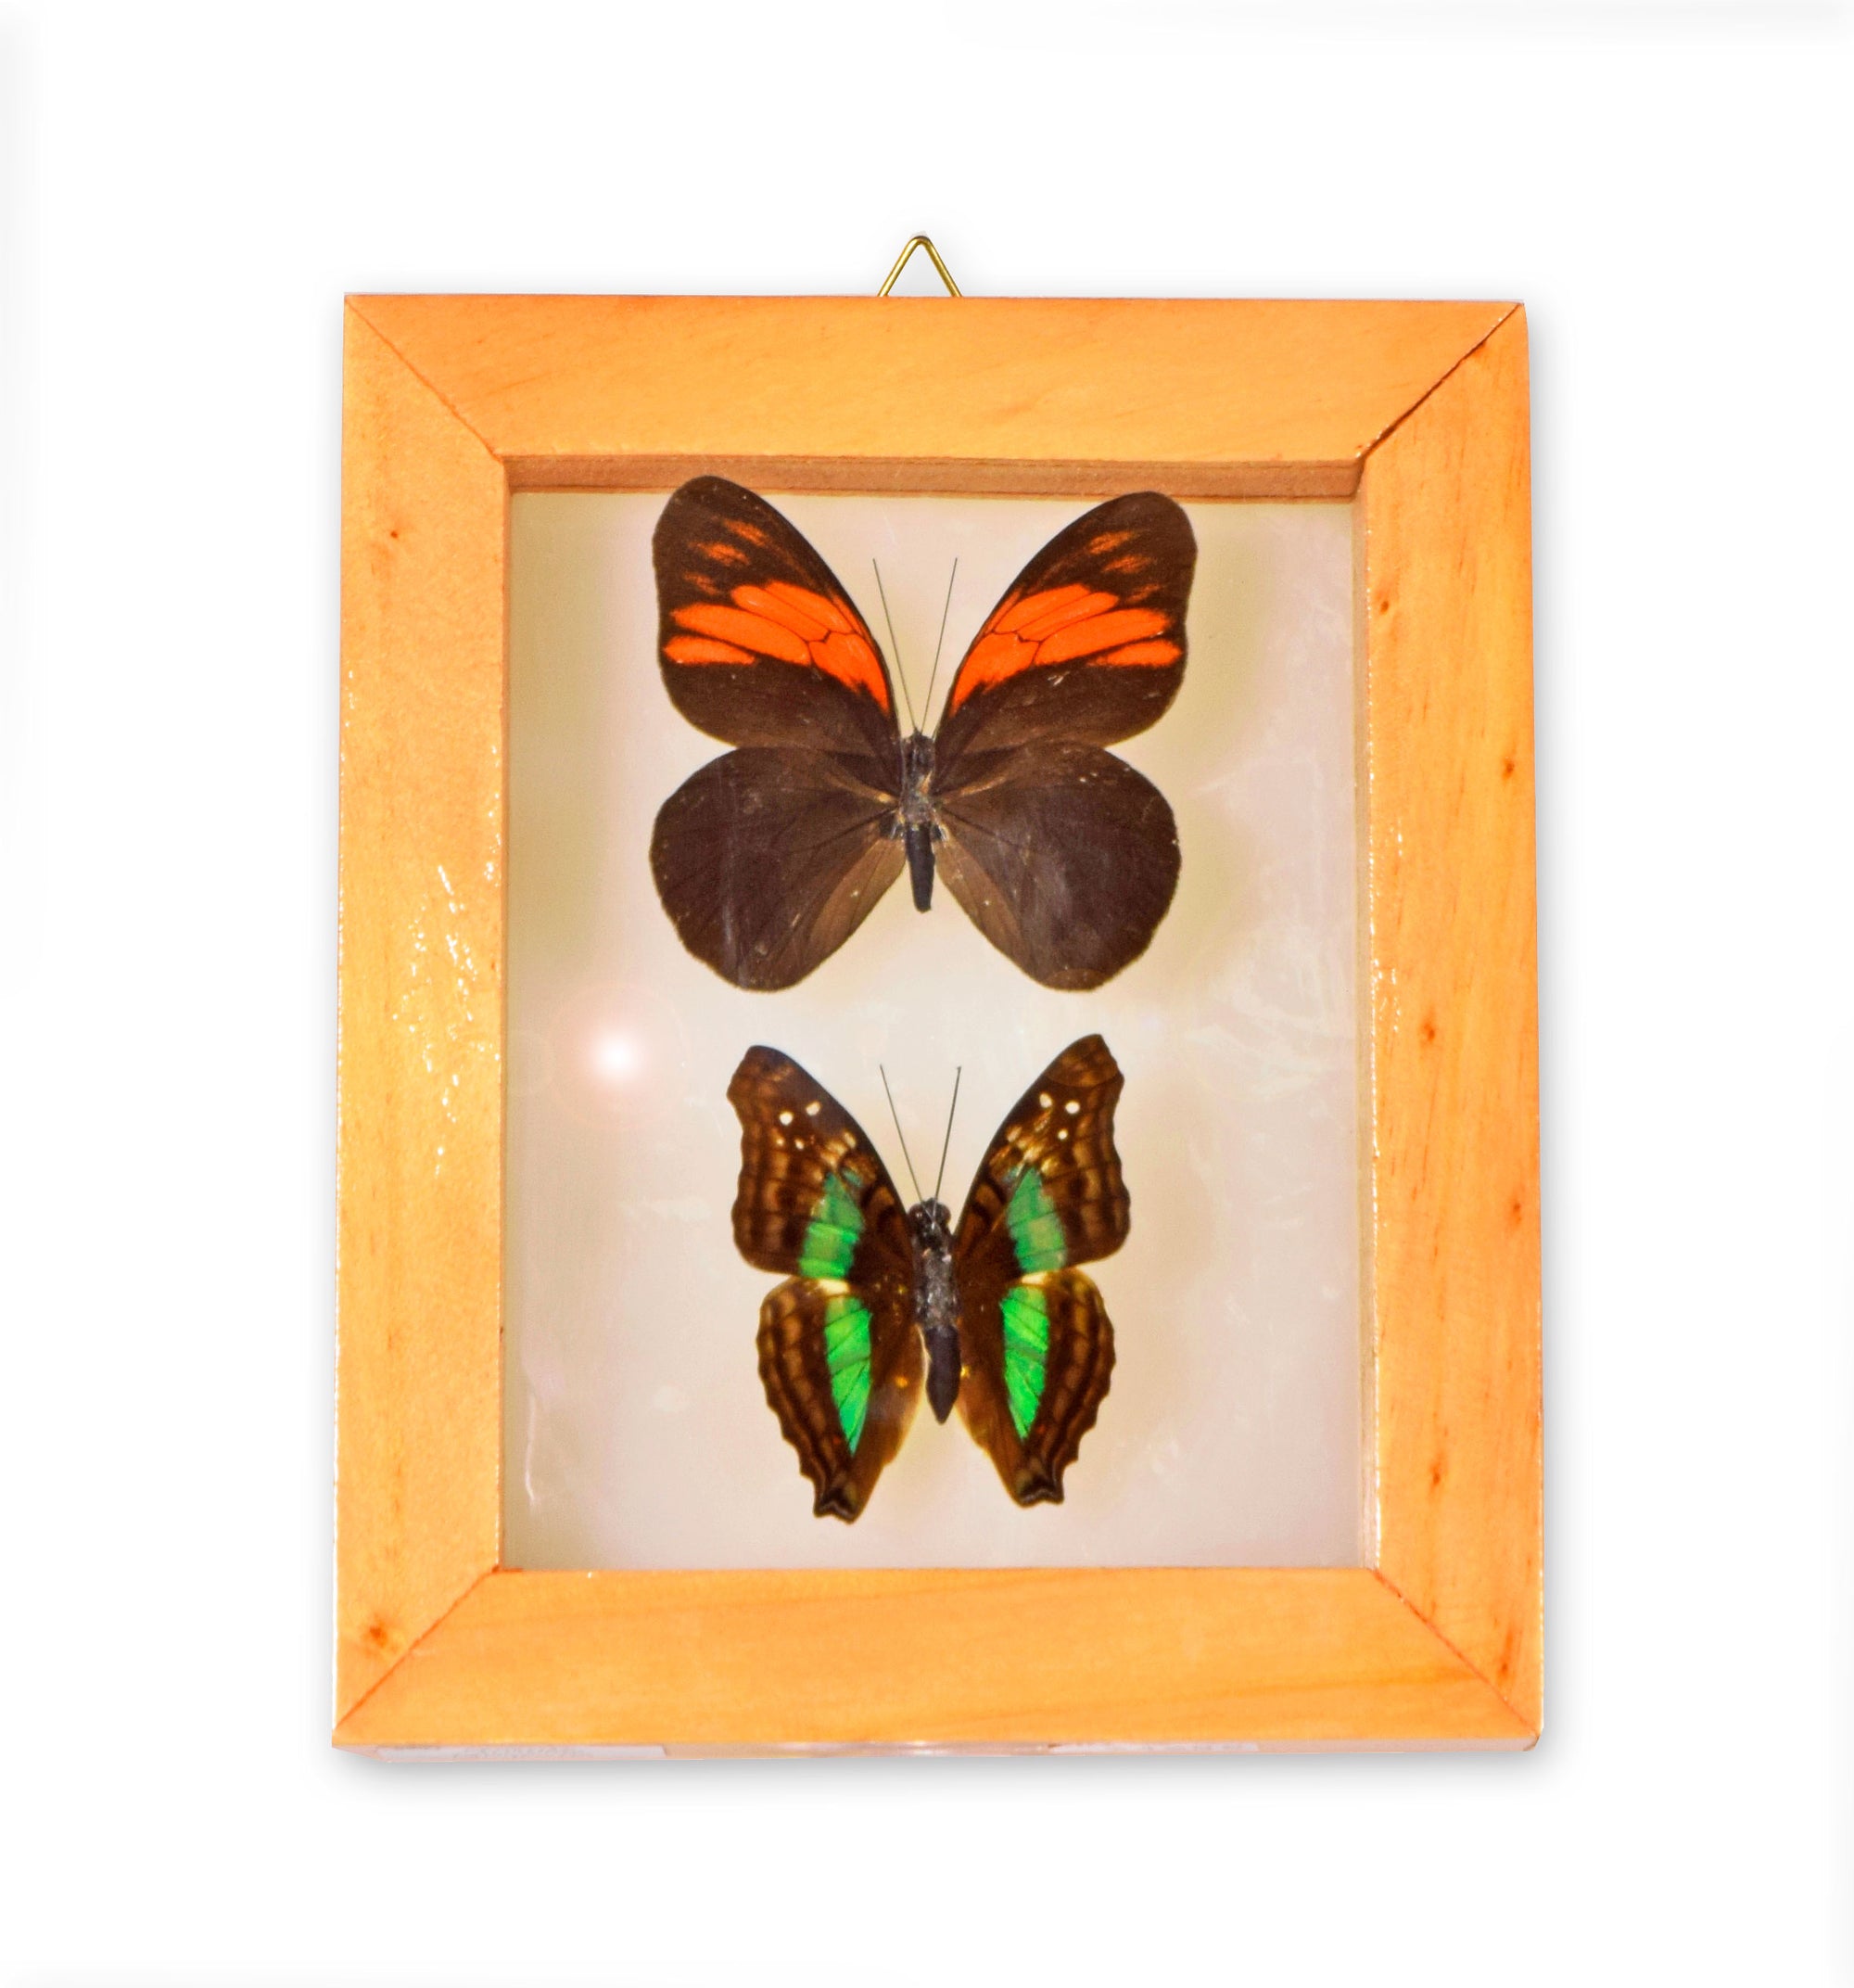 2 butterflies in frame